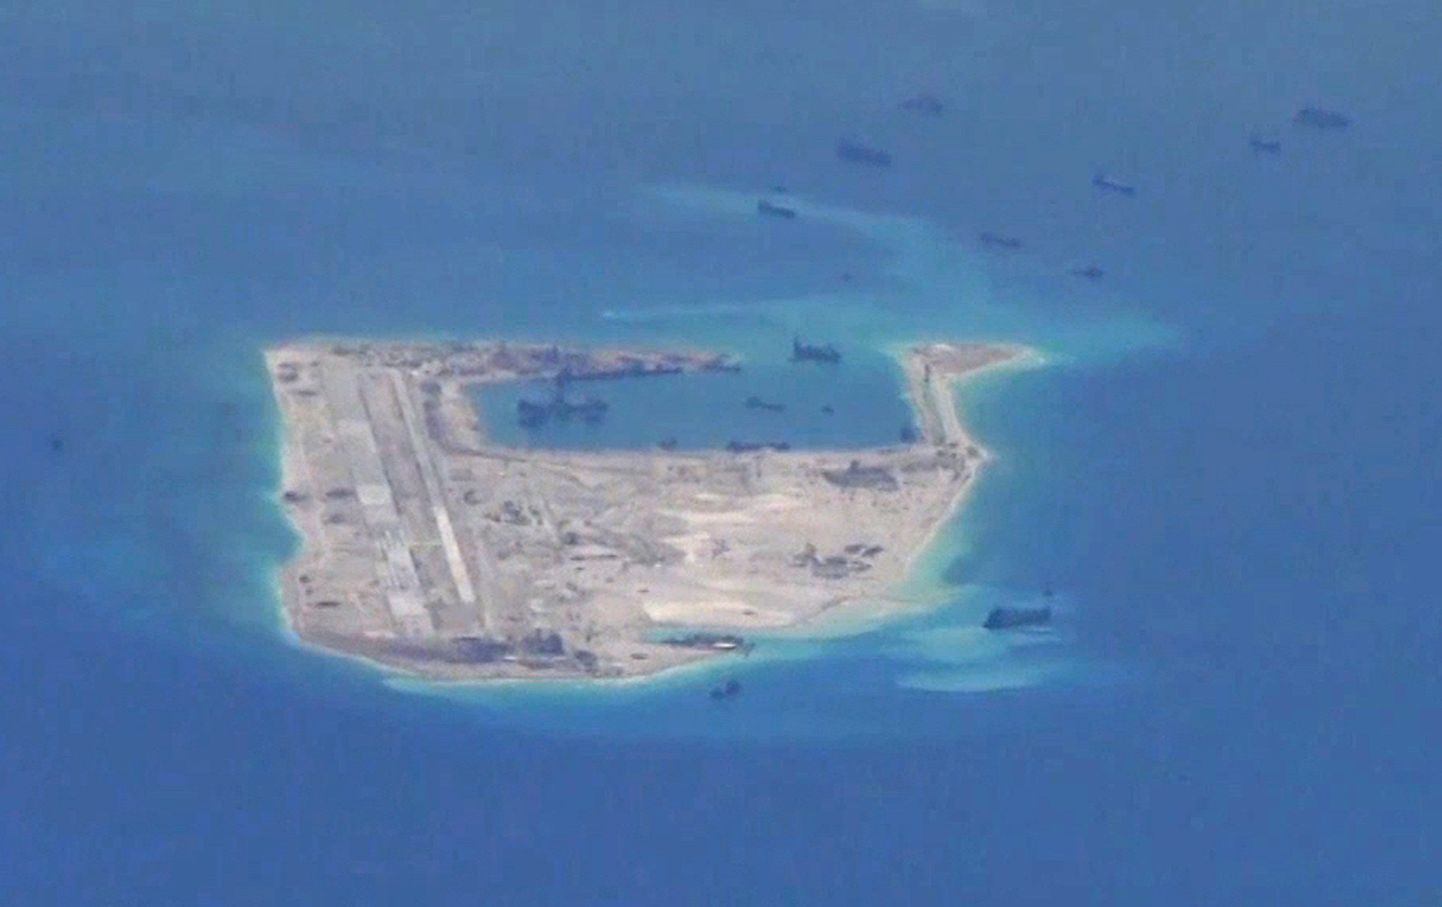 USA luurelennuki foto, millel on väidetavalt näha Hiina aluseid korallrahu Fiery Cross ümbruses.